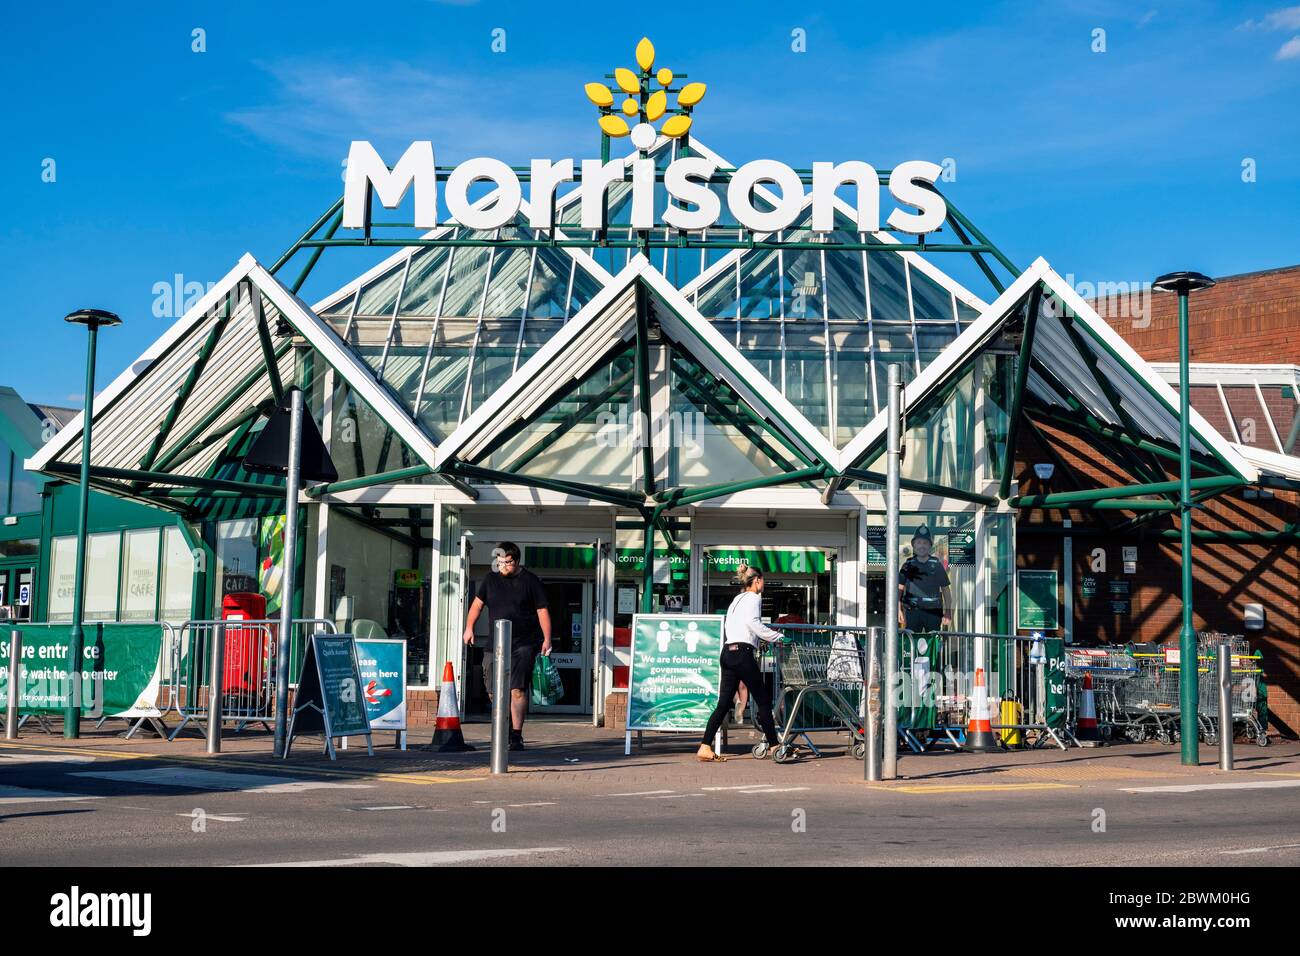 Morrisons supermarket, UK. Stock Photo